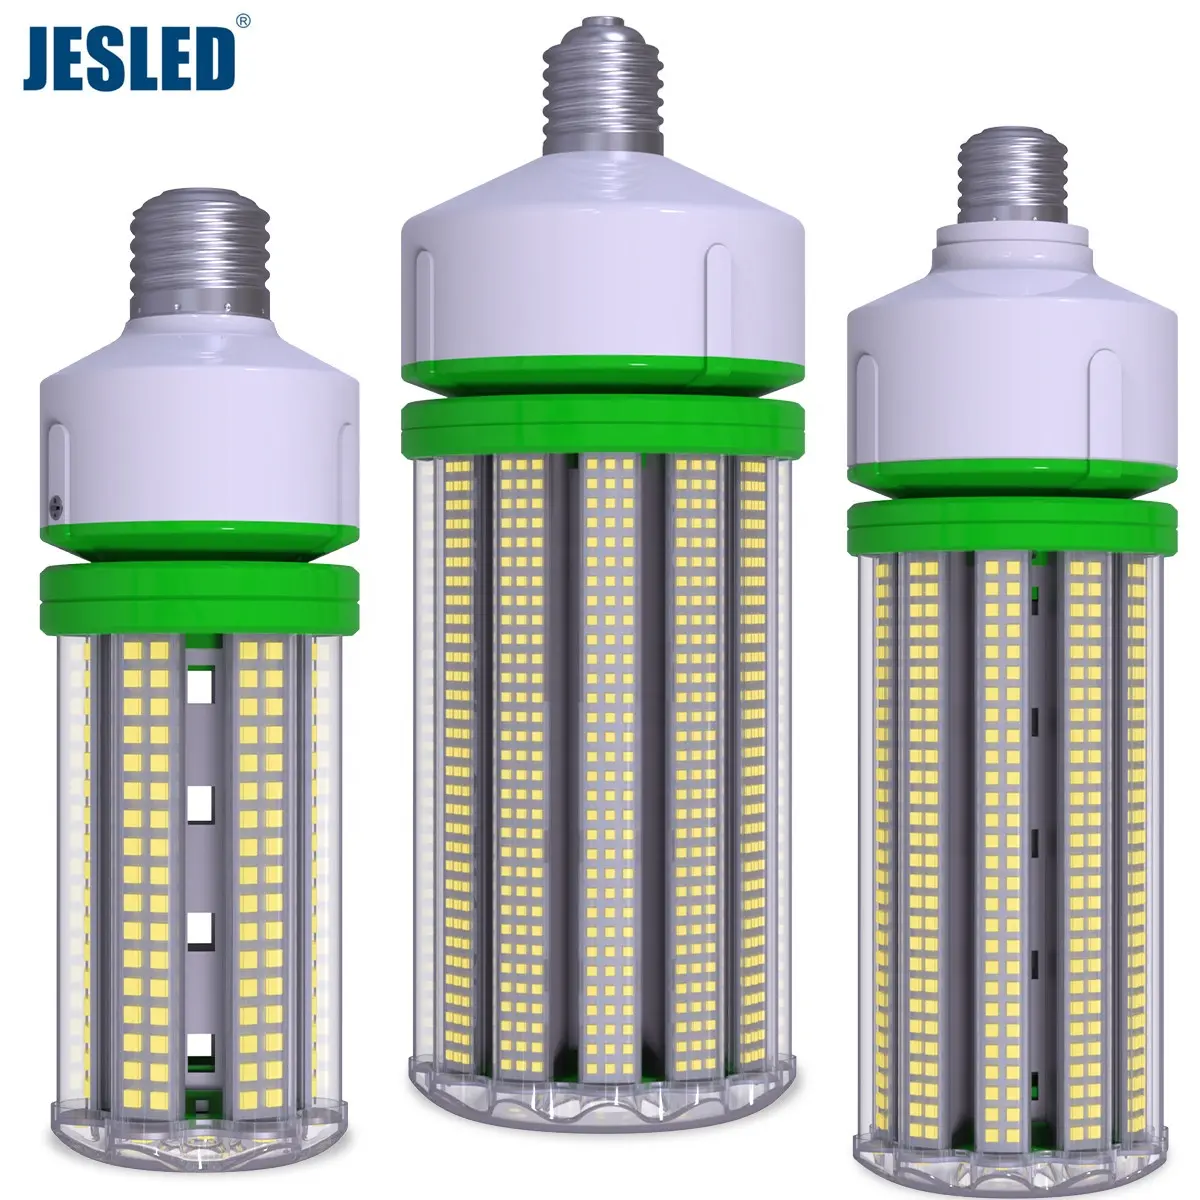 Jesled LED Ngô Ánh sáng độ sáng cao dẫn bóng đèn thay thế đèn cũ 30W 50W 60W dẫn Ngô Ánh Sáng 80W 100W 120W 150W bóng đèn chiếu sáng